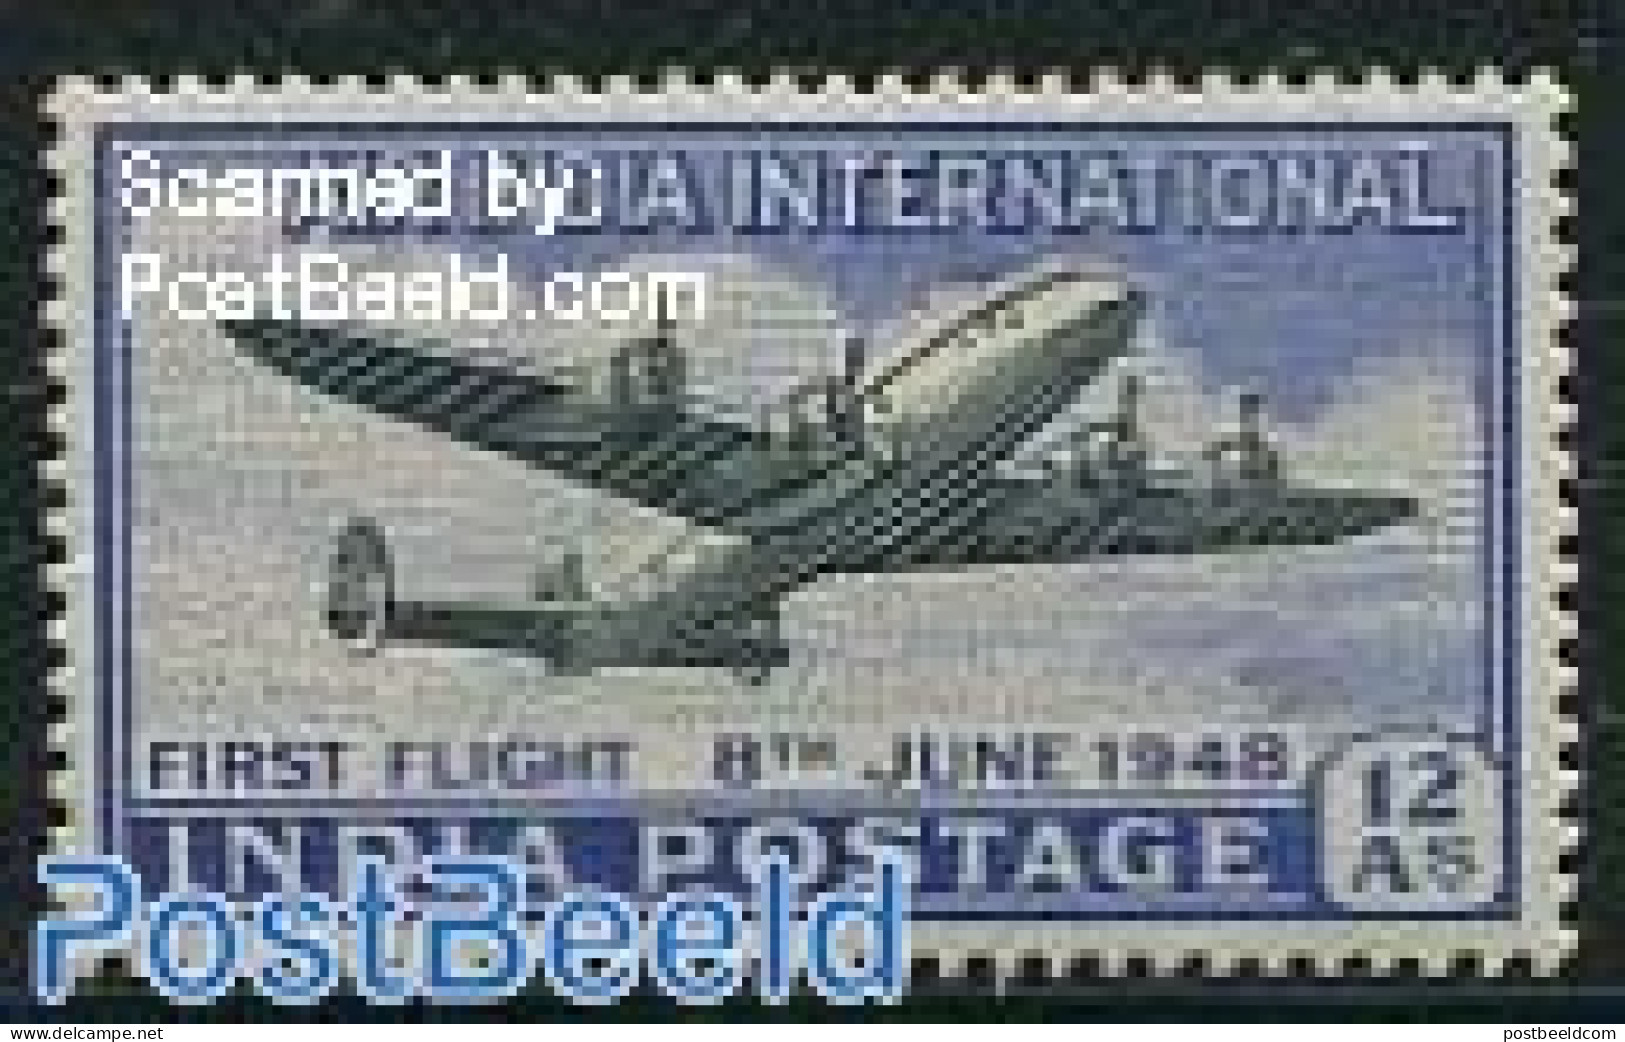 India 1948 Flights To Britain 1v, Mint NH, Transport - Aircraft & Aviation - Ongebruikt